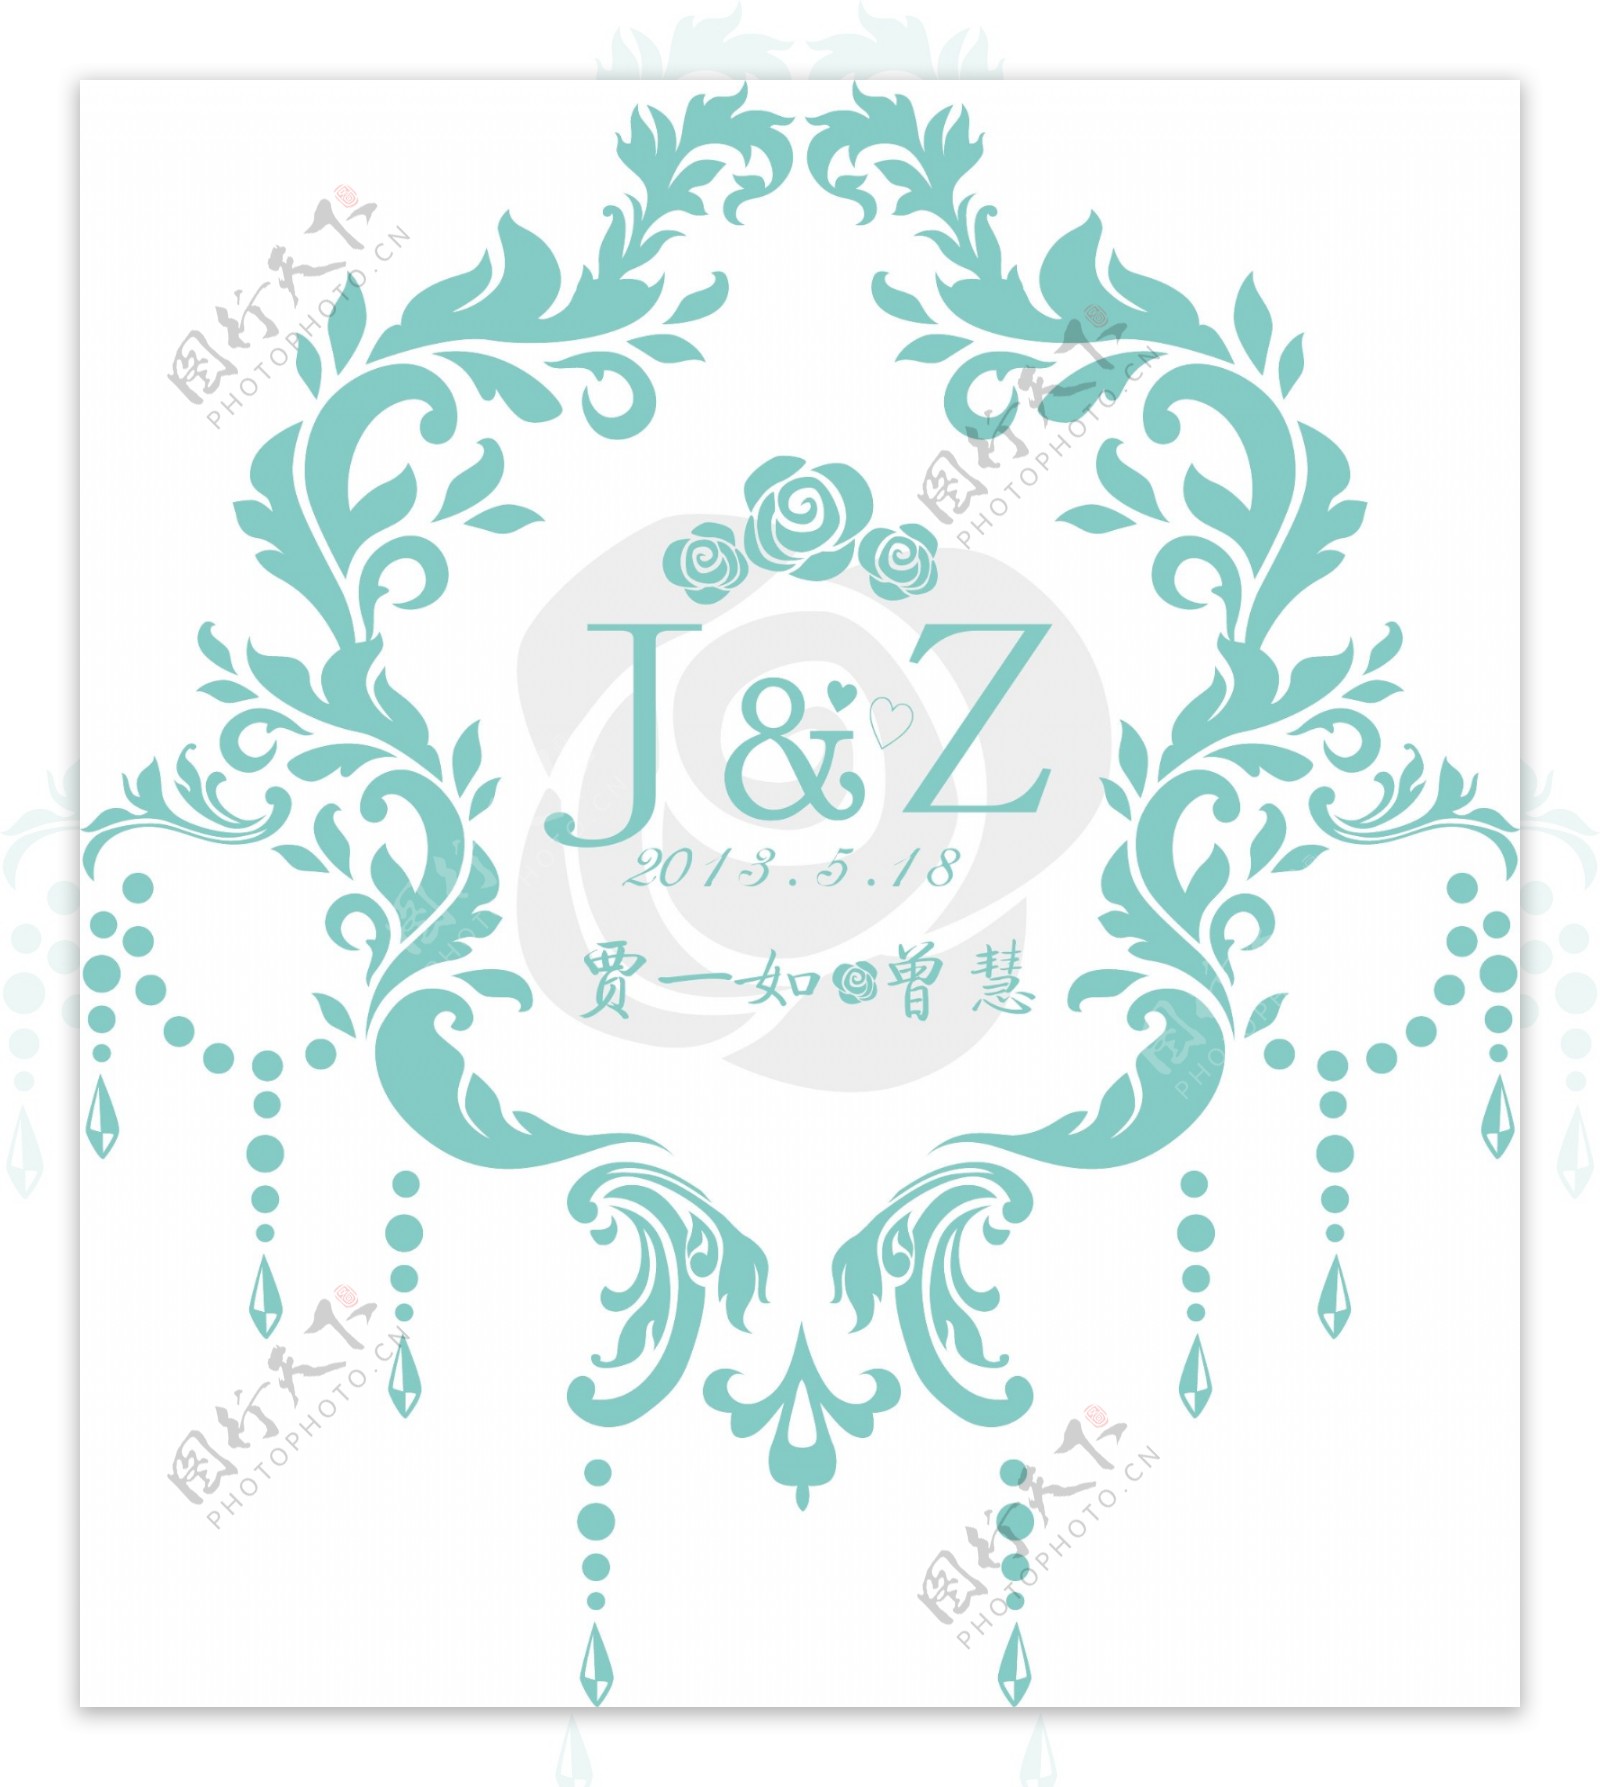 主题婚礼设计婚礼logo